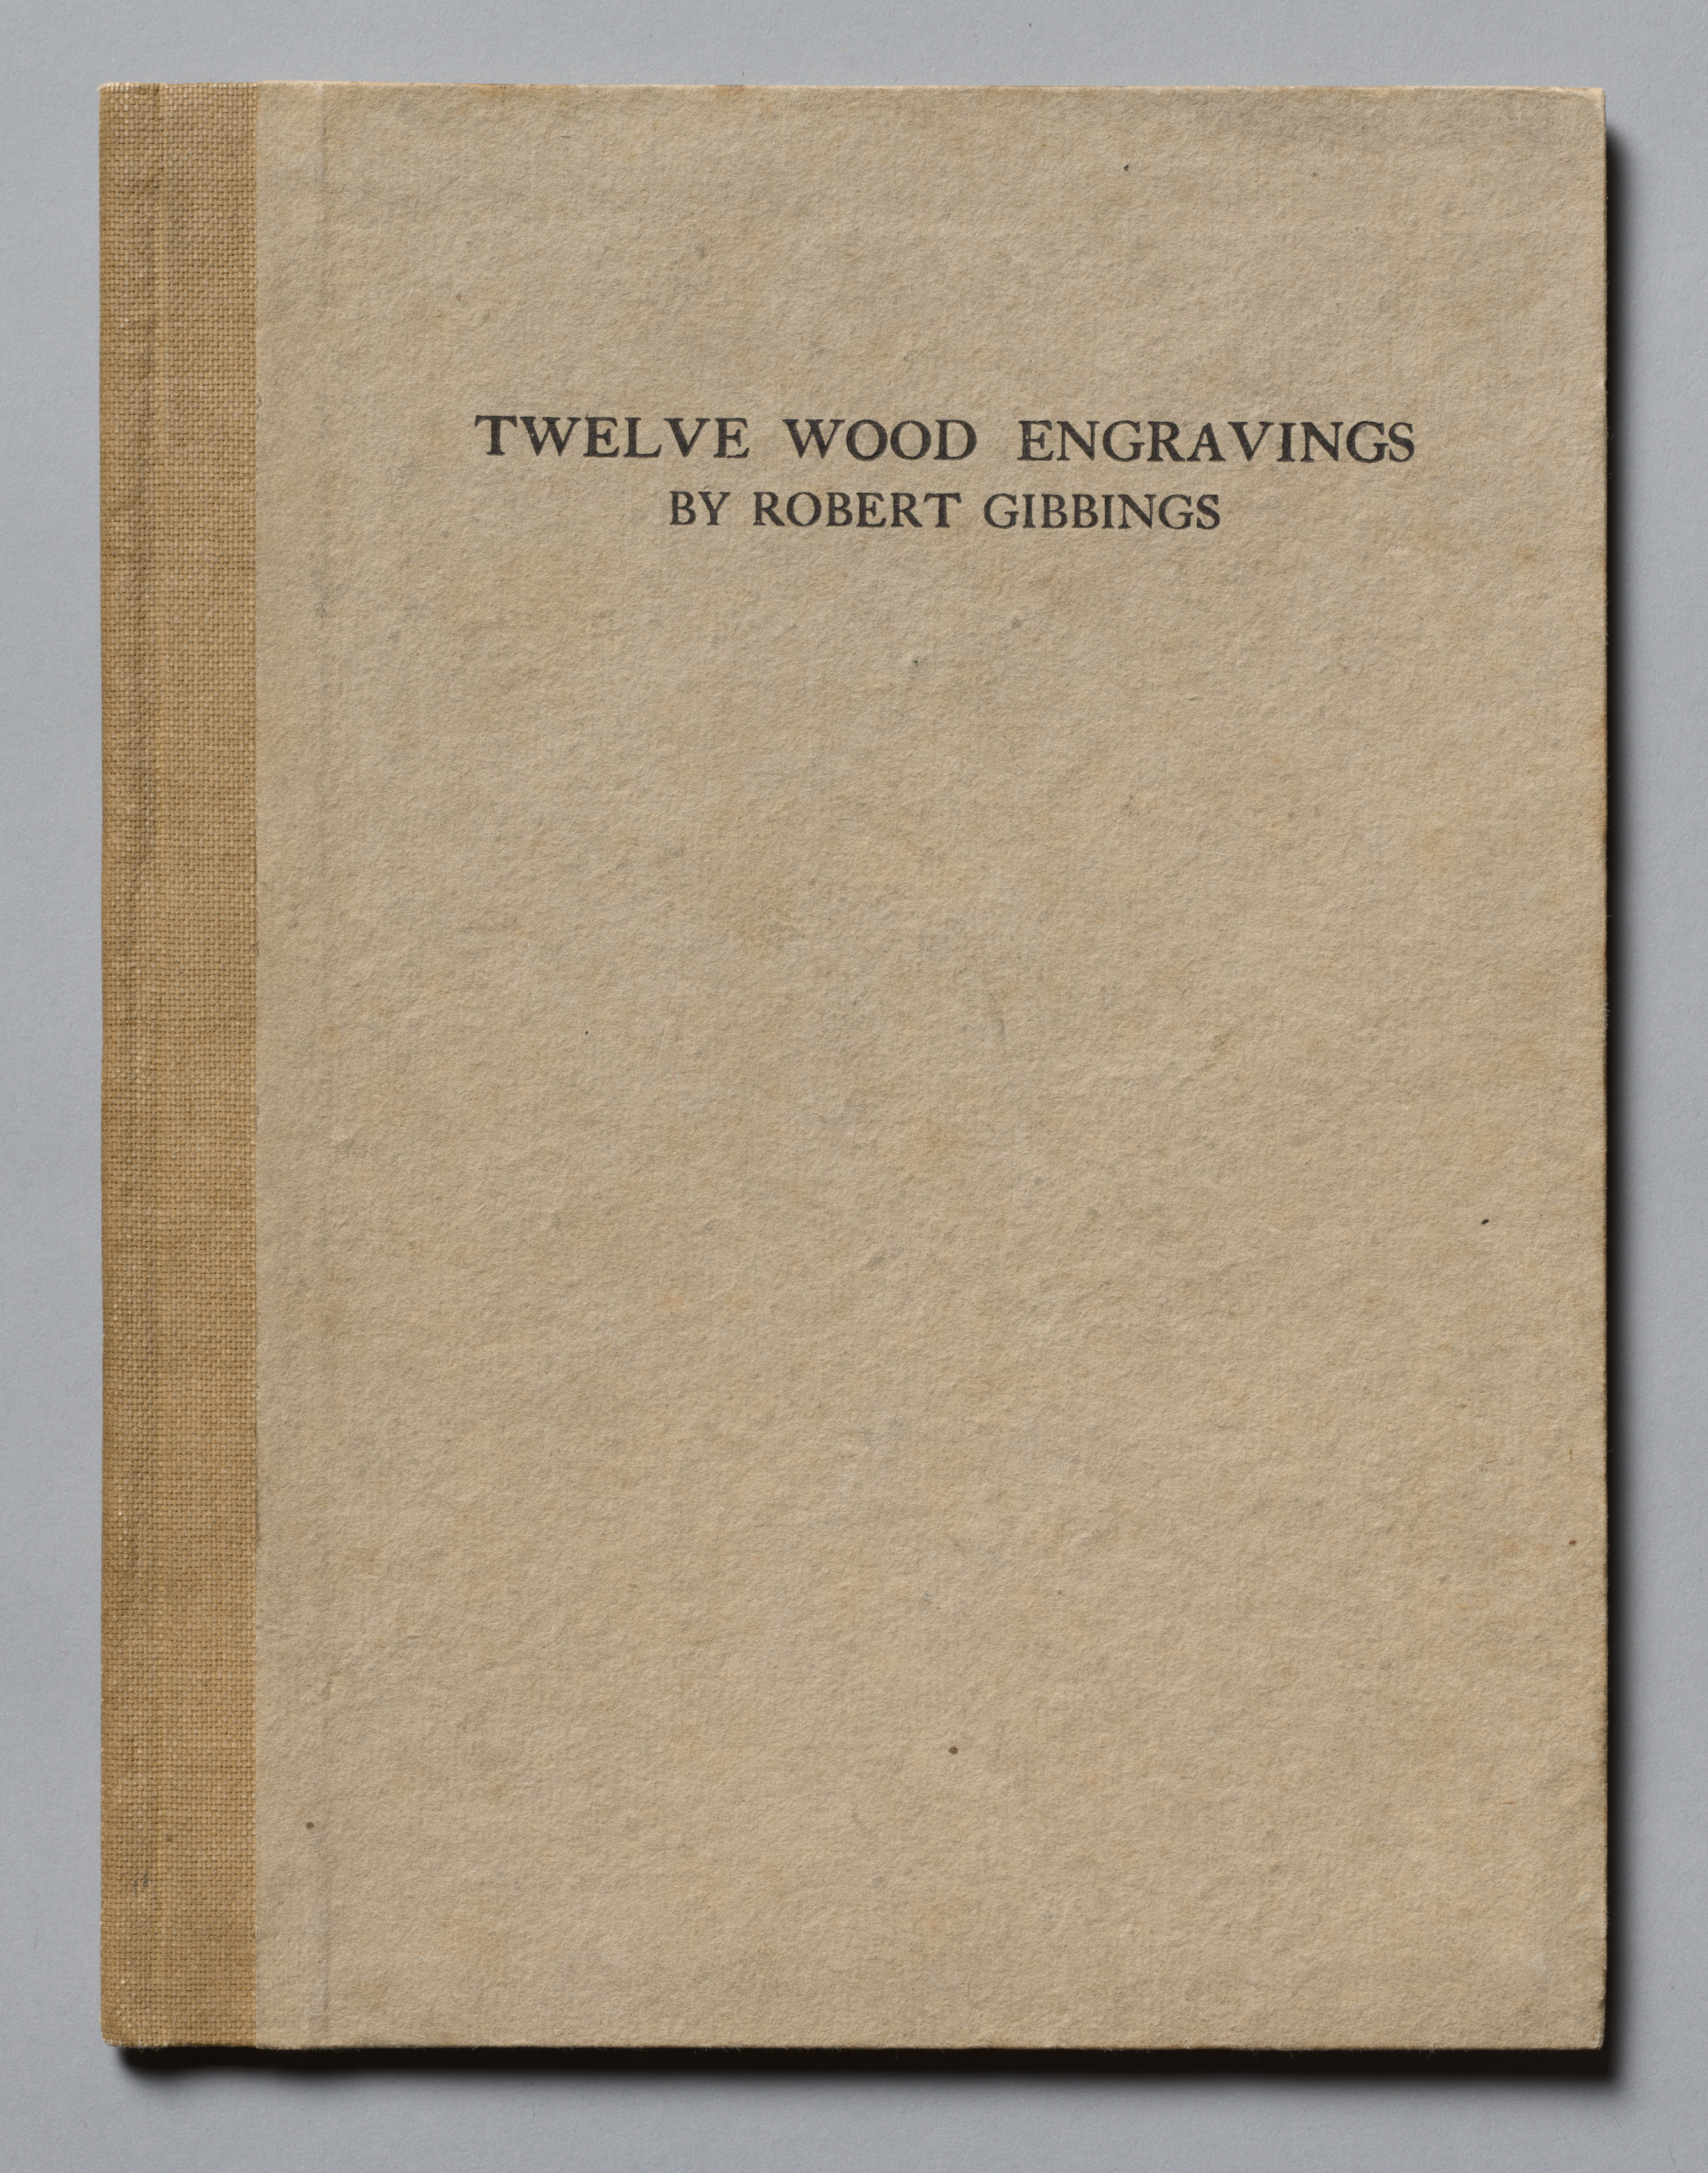 Twelve Wood Engravings by Robert Gibbings (Bound Volume, no. 74 of 125)